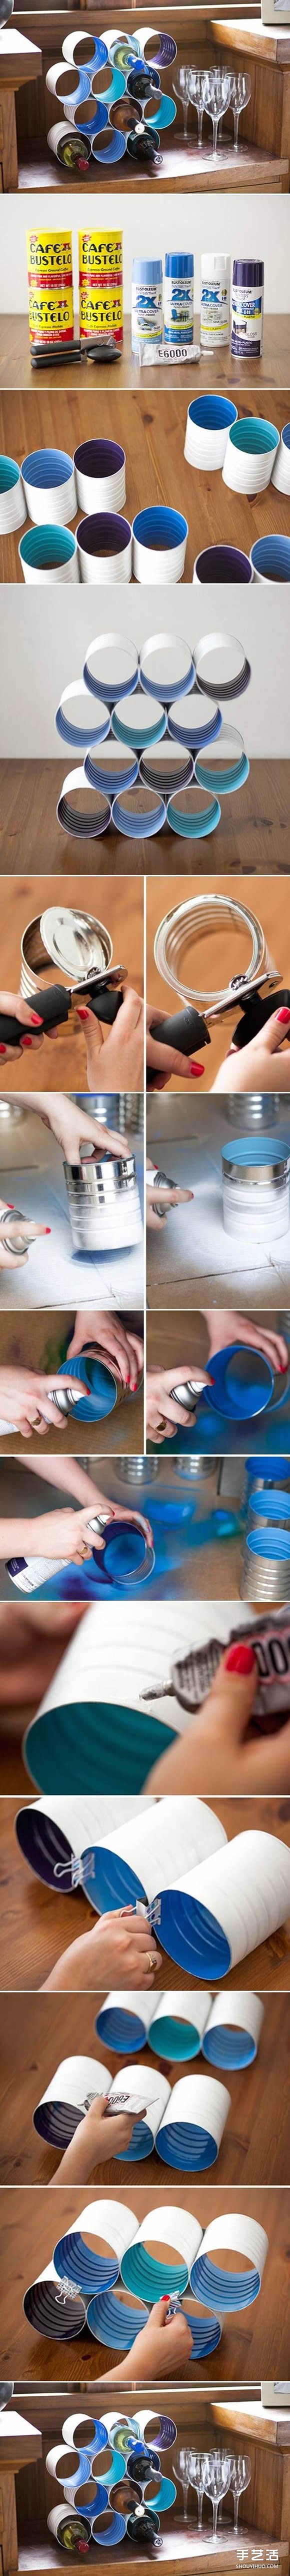 铁罐子废物利用图片 DIY铁罐的创意小制作